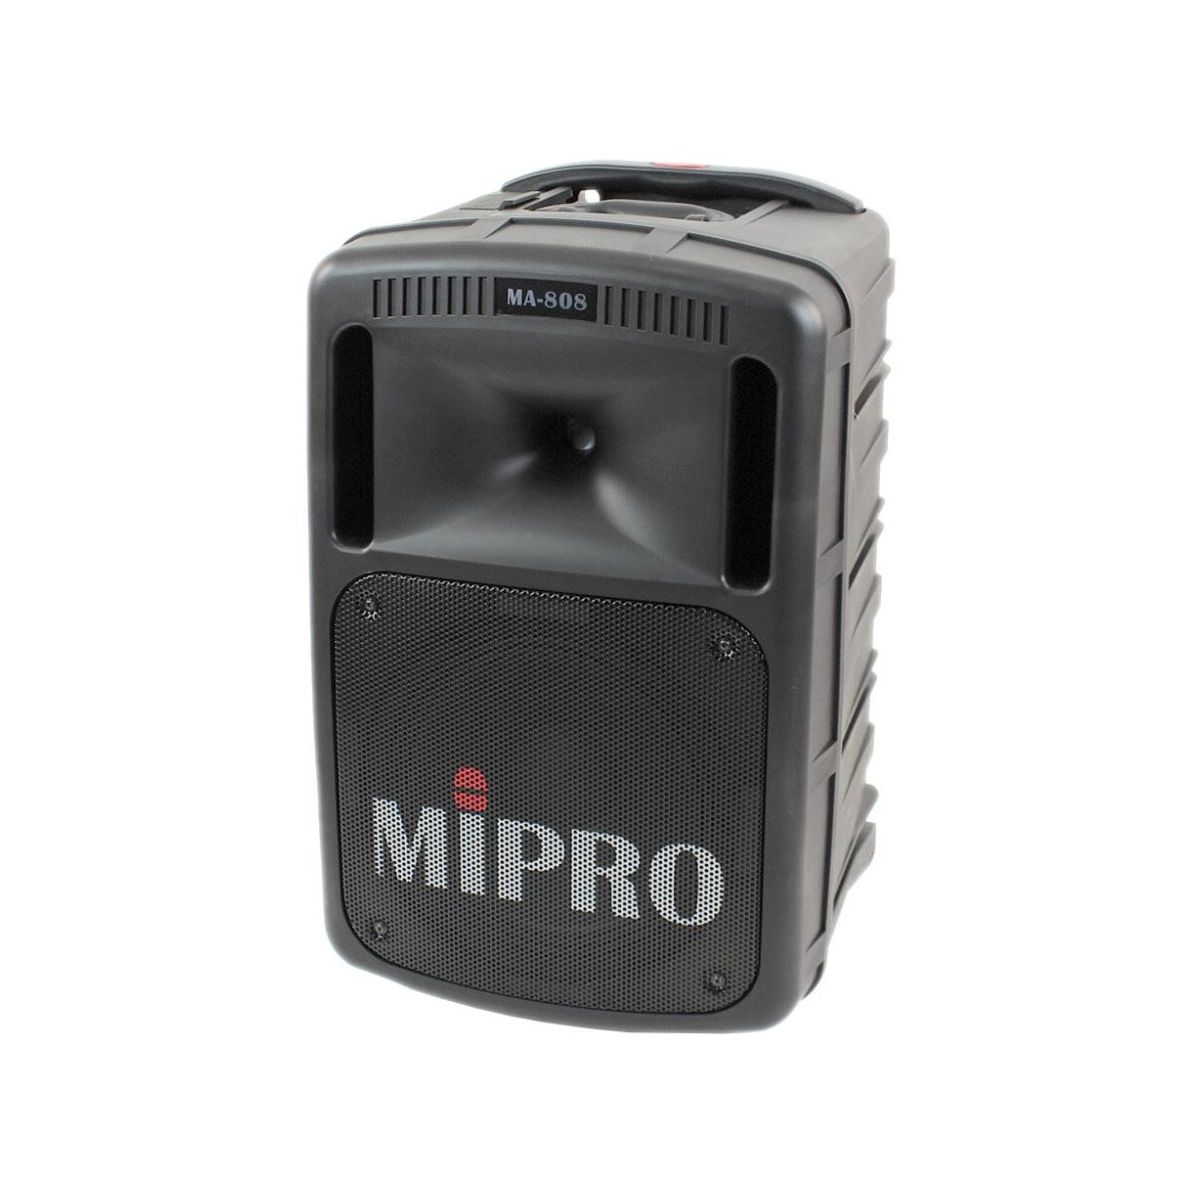 Enceintes passives pour sonos portables - Mipro - MA 808 EXP